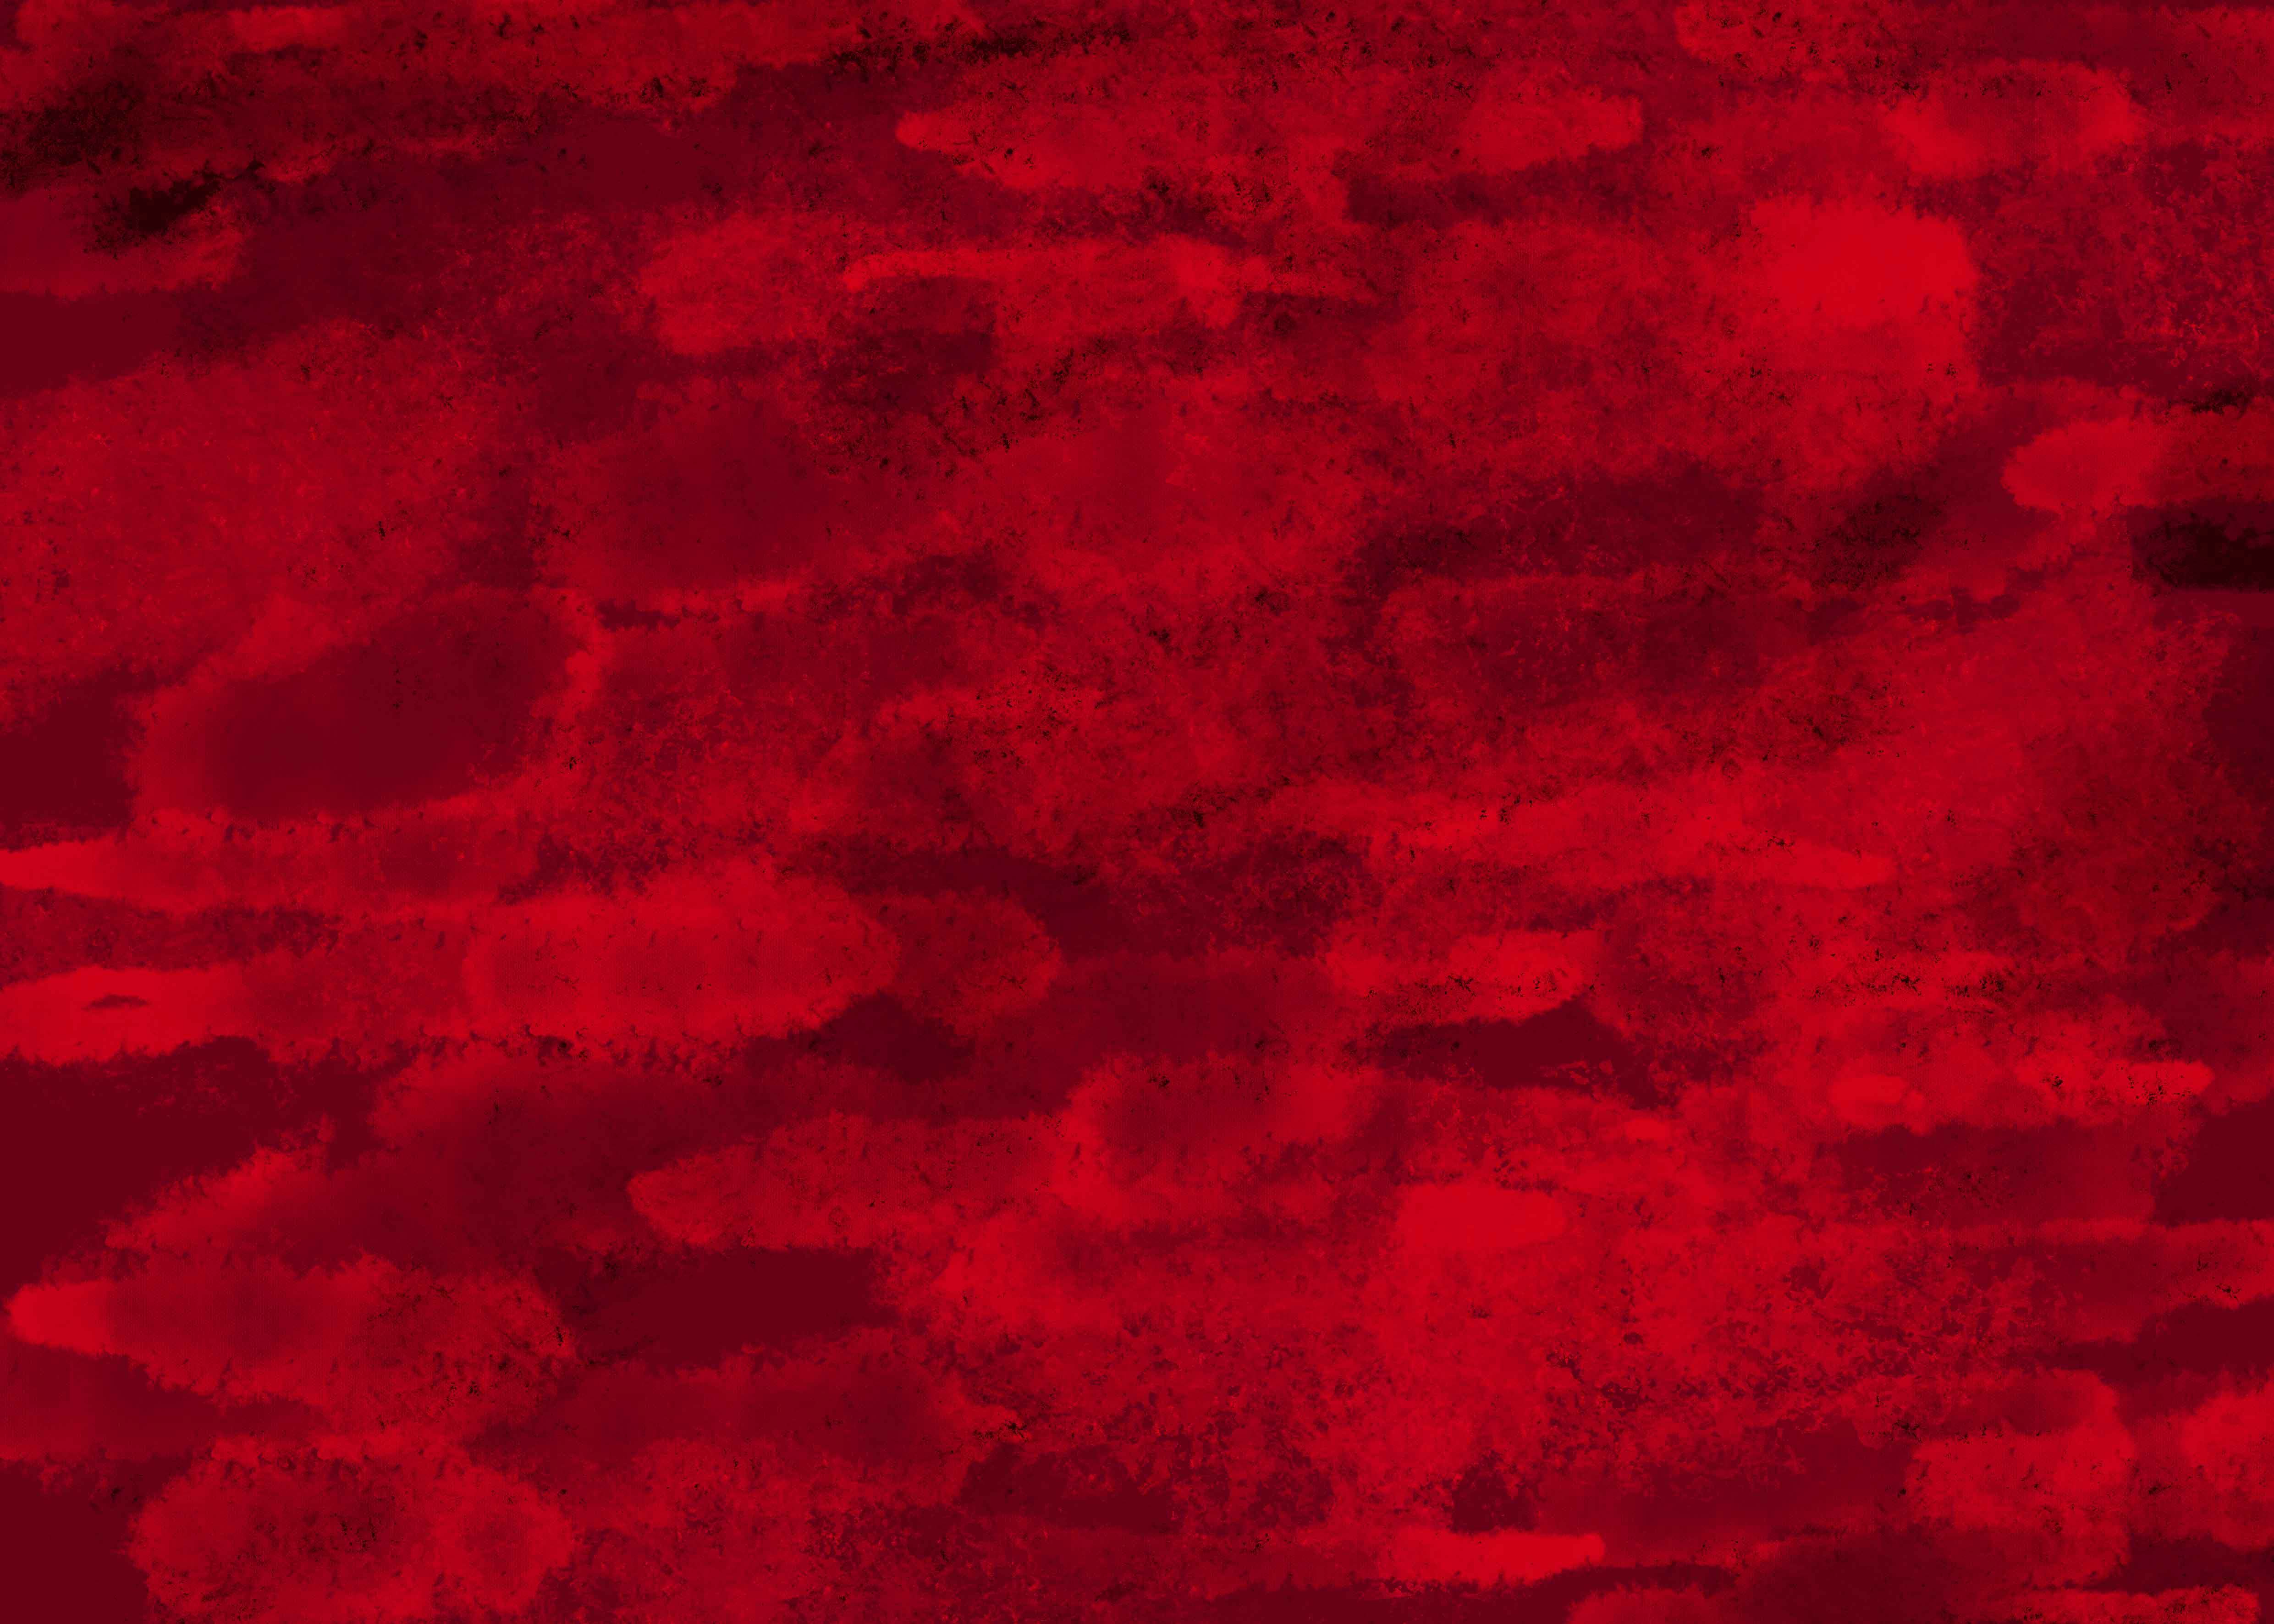 红 中国红 壁纸 红色壁纸 - 高清图片，堆糖，美图壁纸兴趣社区